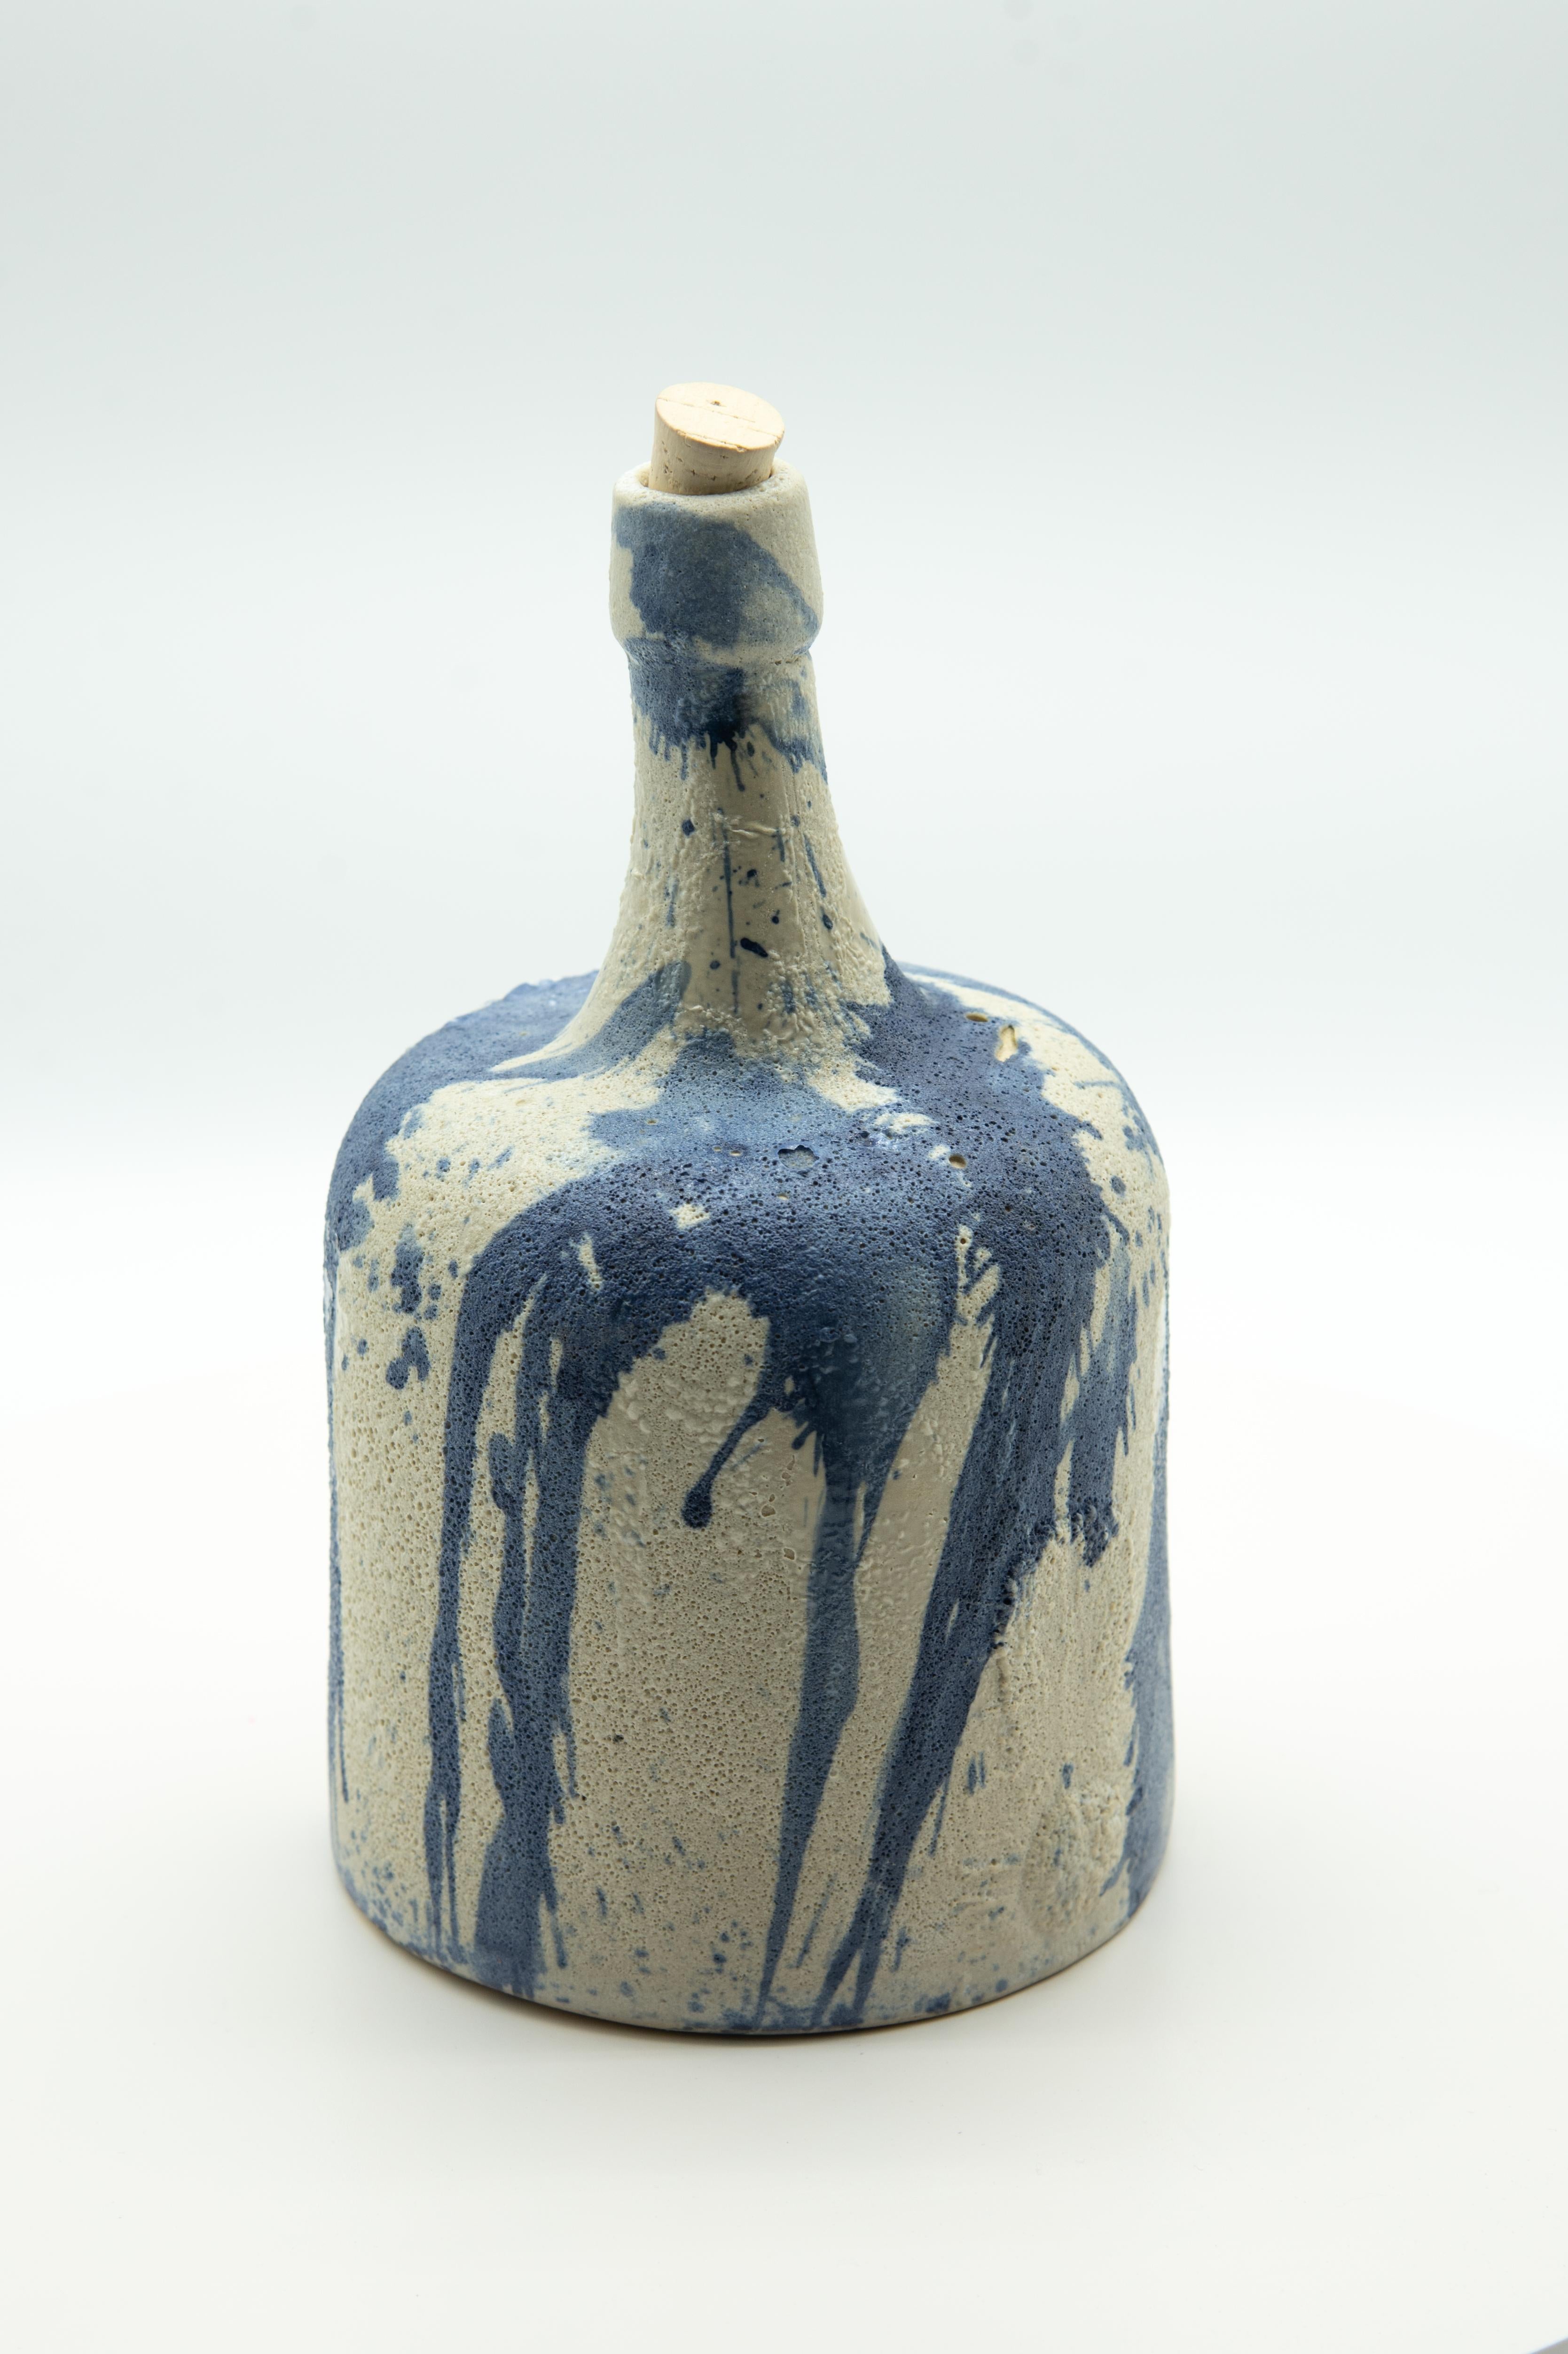 Diese rustikale Mezcalflasche ist eine Nachbildung einer antiken Flasche oder eines Demijohns, der zur Aufbewahrung von Mezcal verwendet wurde, der bei Volkstheatern in Oaxaca, Mexiko, getrunken wurde. Die Keramikflasche ist mit Kobalt bemalt, was